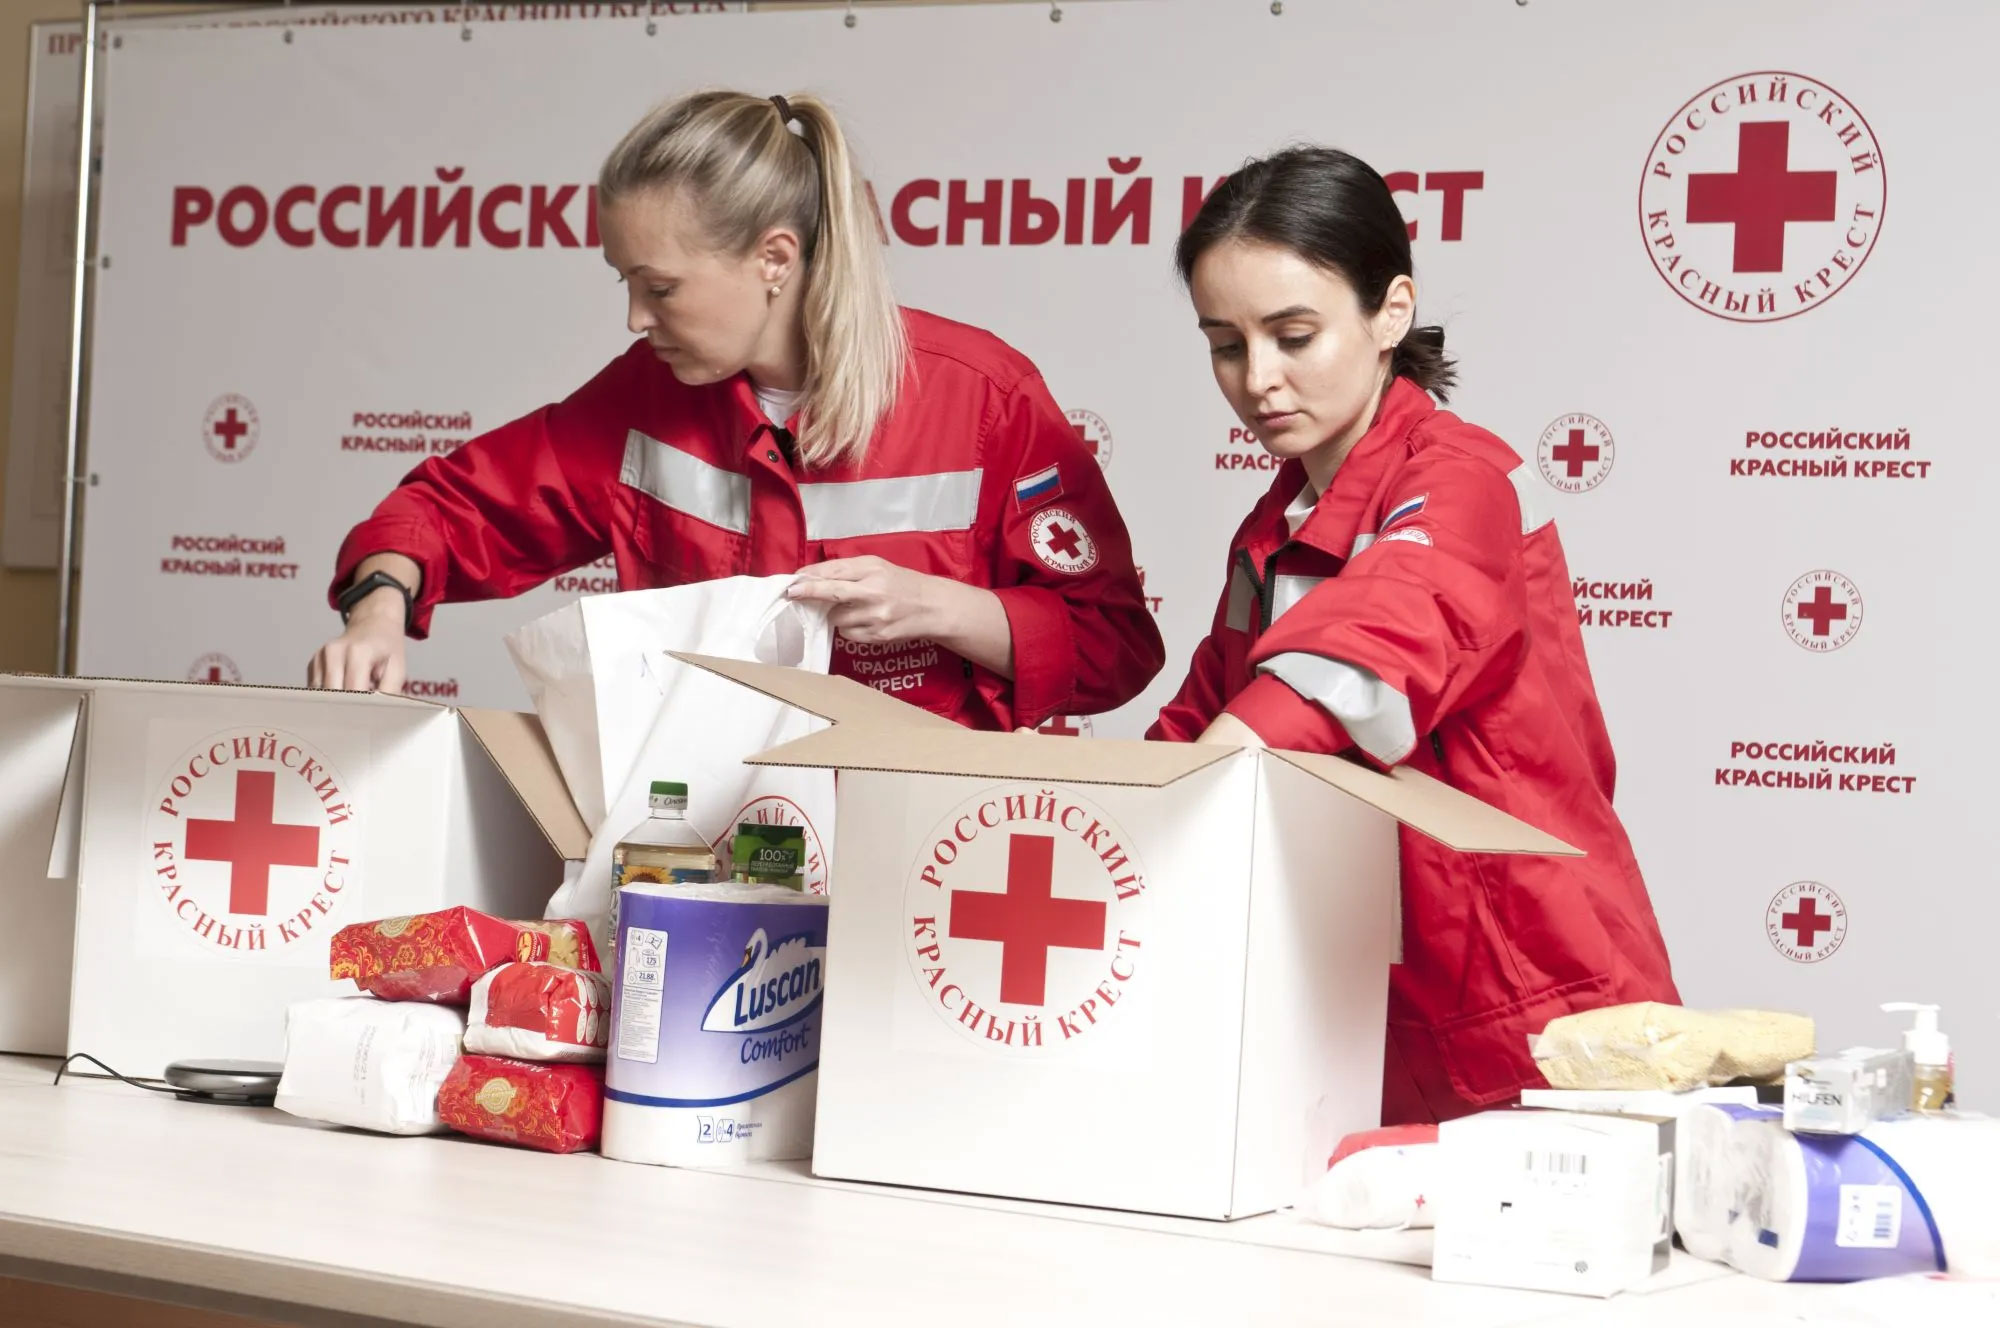 Телефон приемной красного креста. Российский красный крест 155 лет. РКК красный крест. Волонтеры красного Креста. Красный.